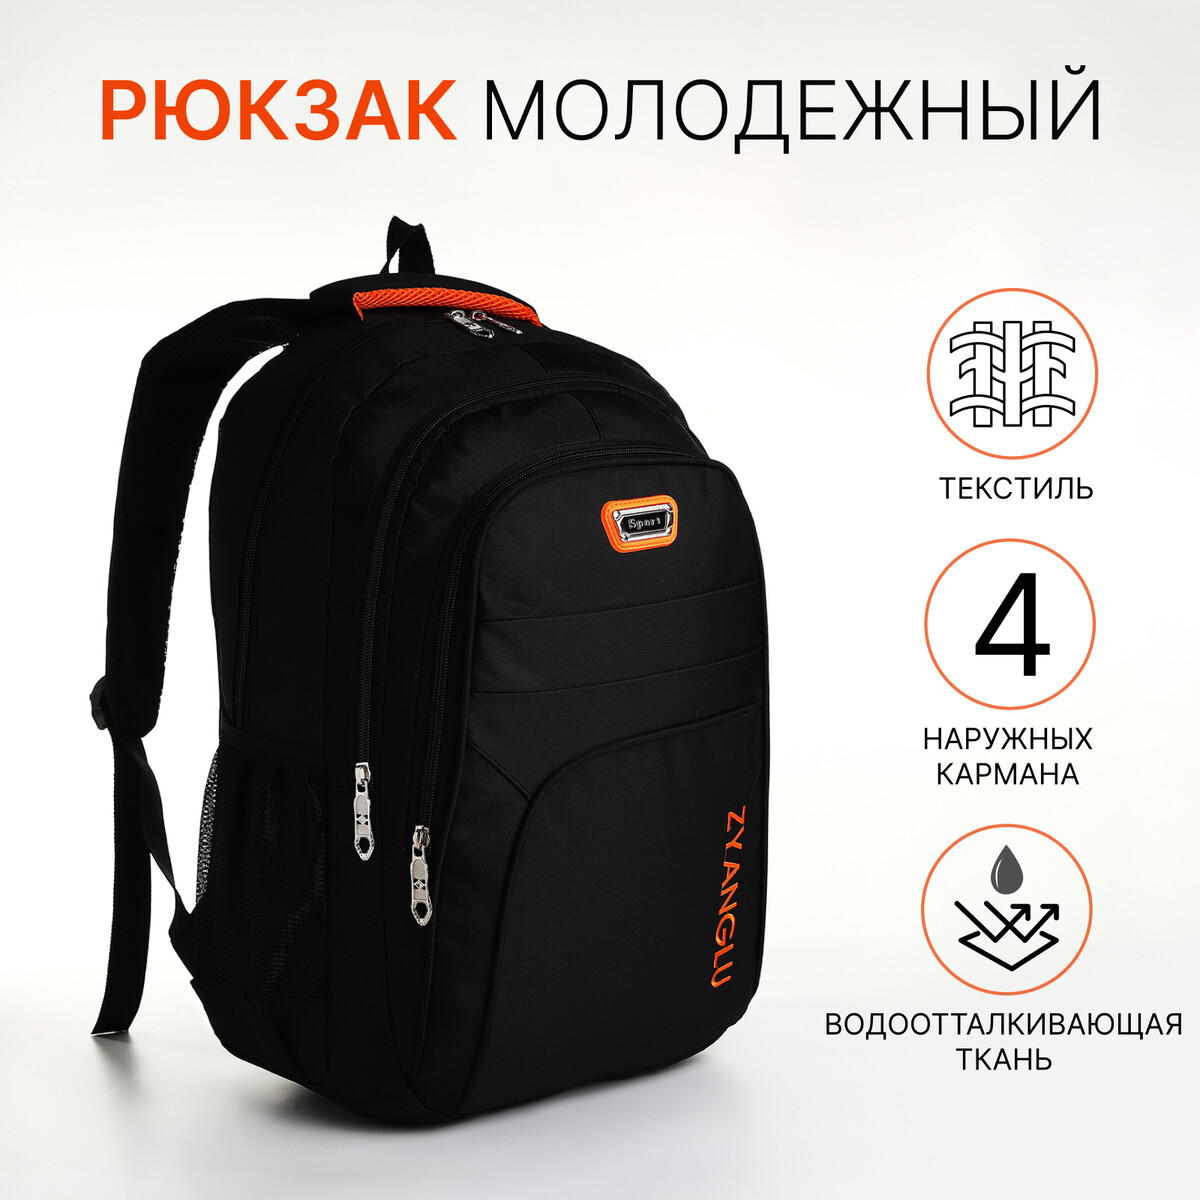 Рюкзак молодежный на молнии, 4 кармана, цвет черный/оранжевый